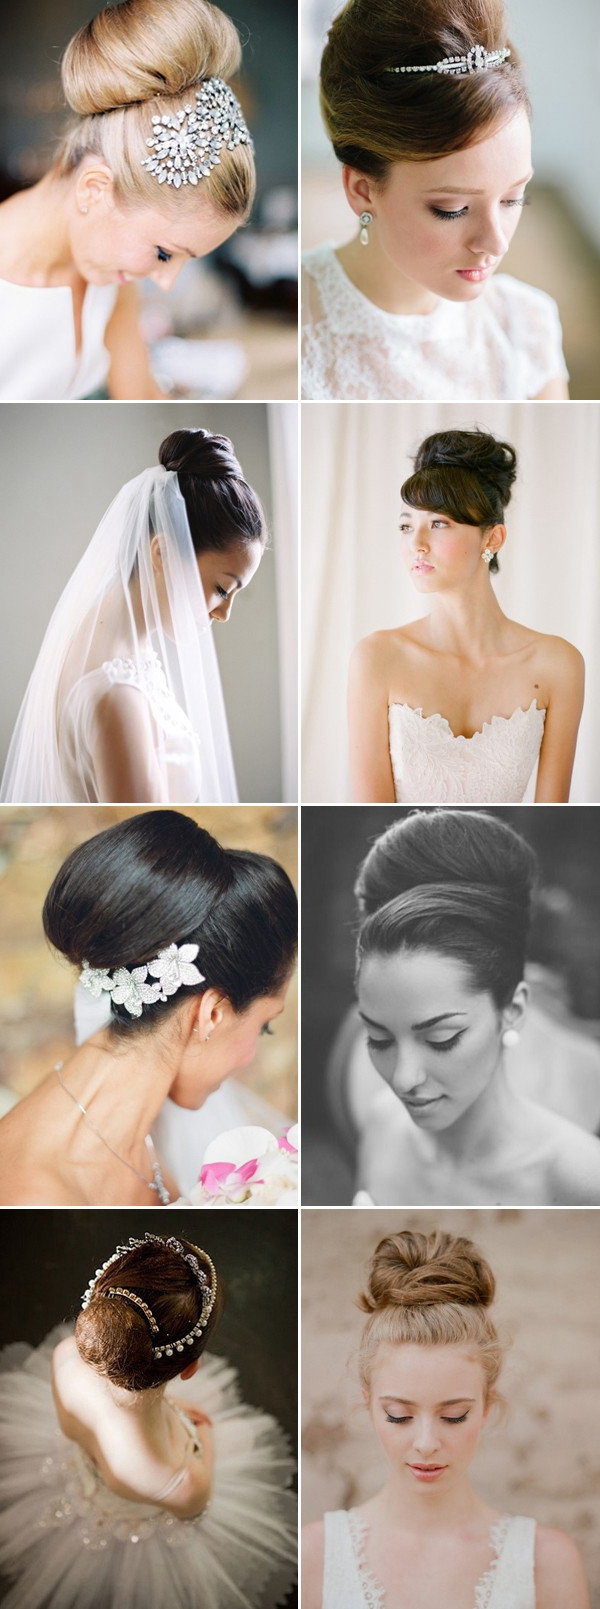 Audrey Hepburn Wedding Hairstyles
 100 Romantic Long Wedding Hairstyles 2018 Curls Half